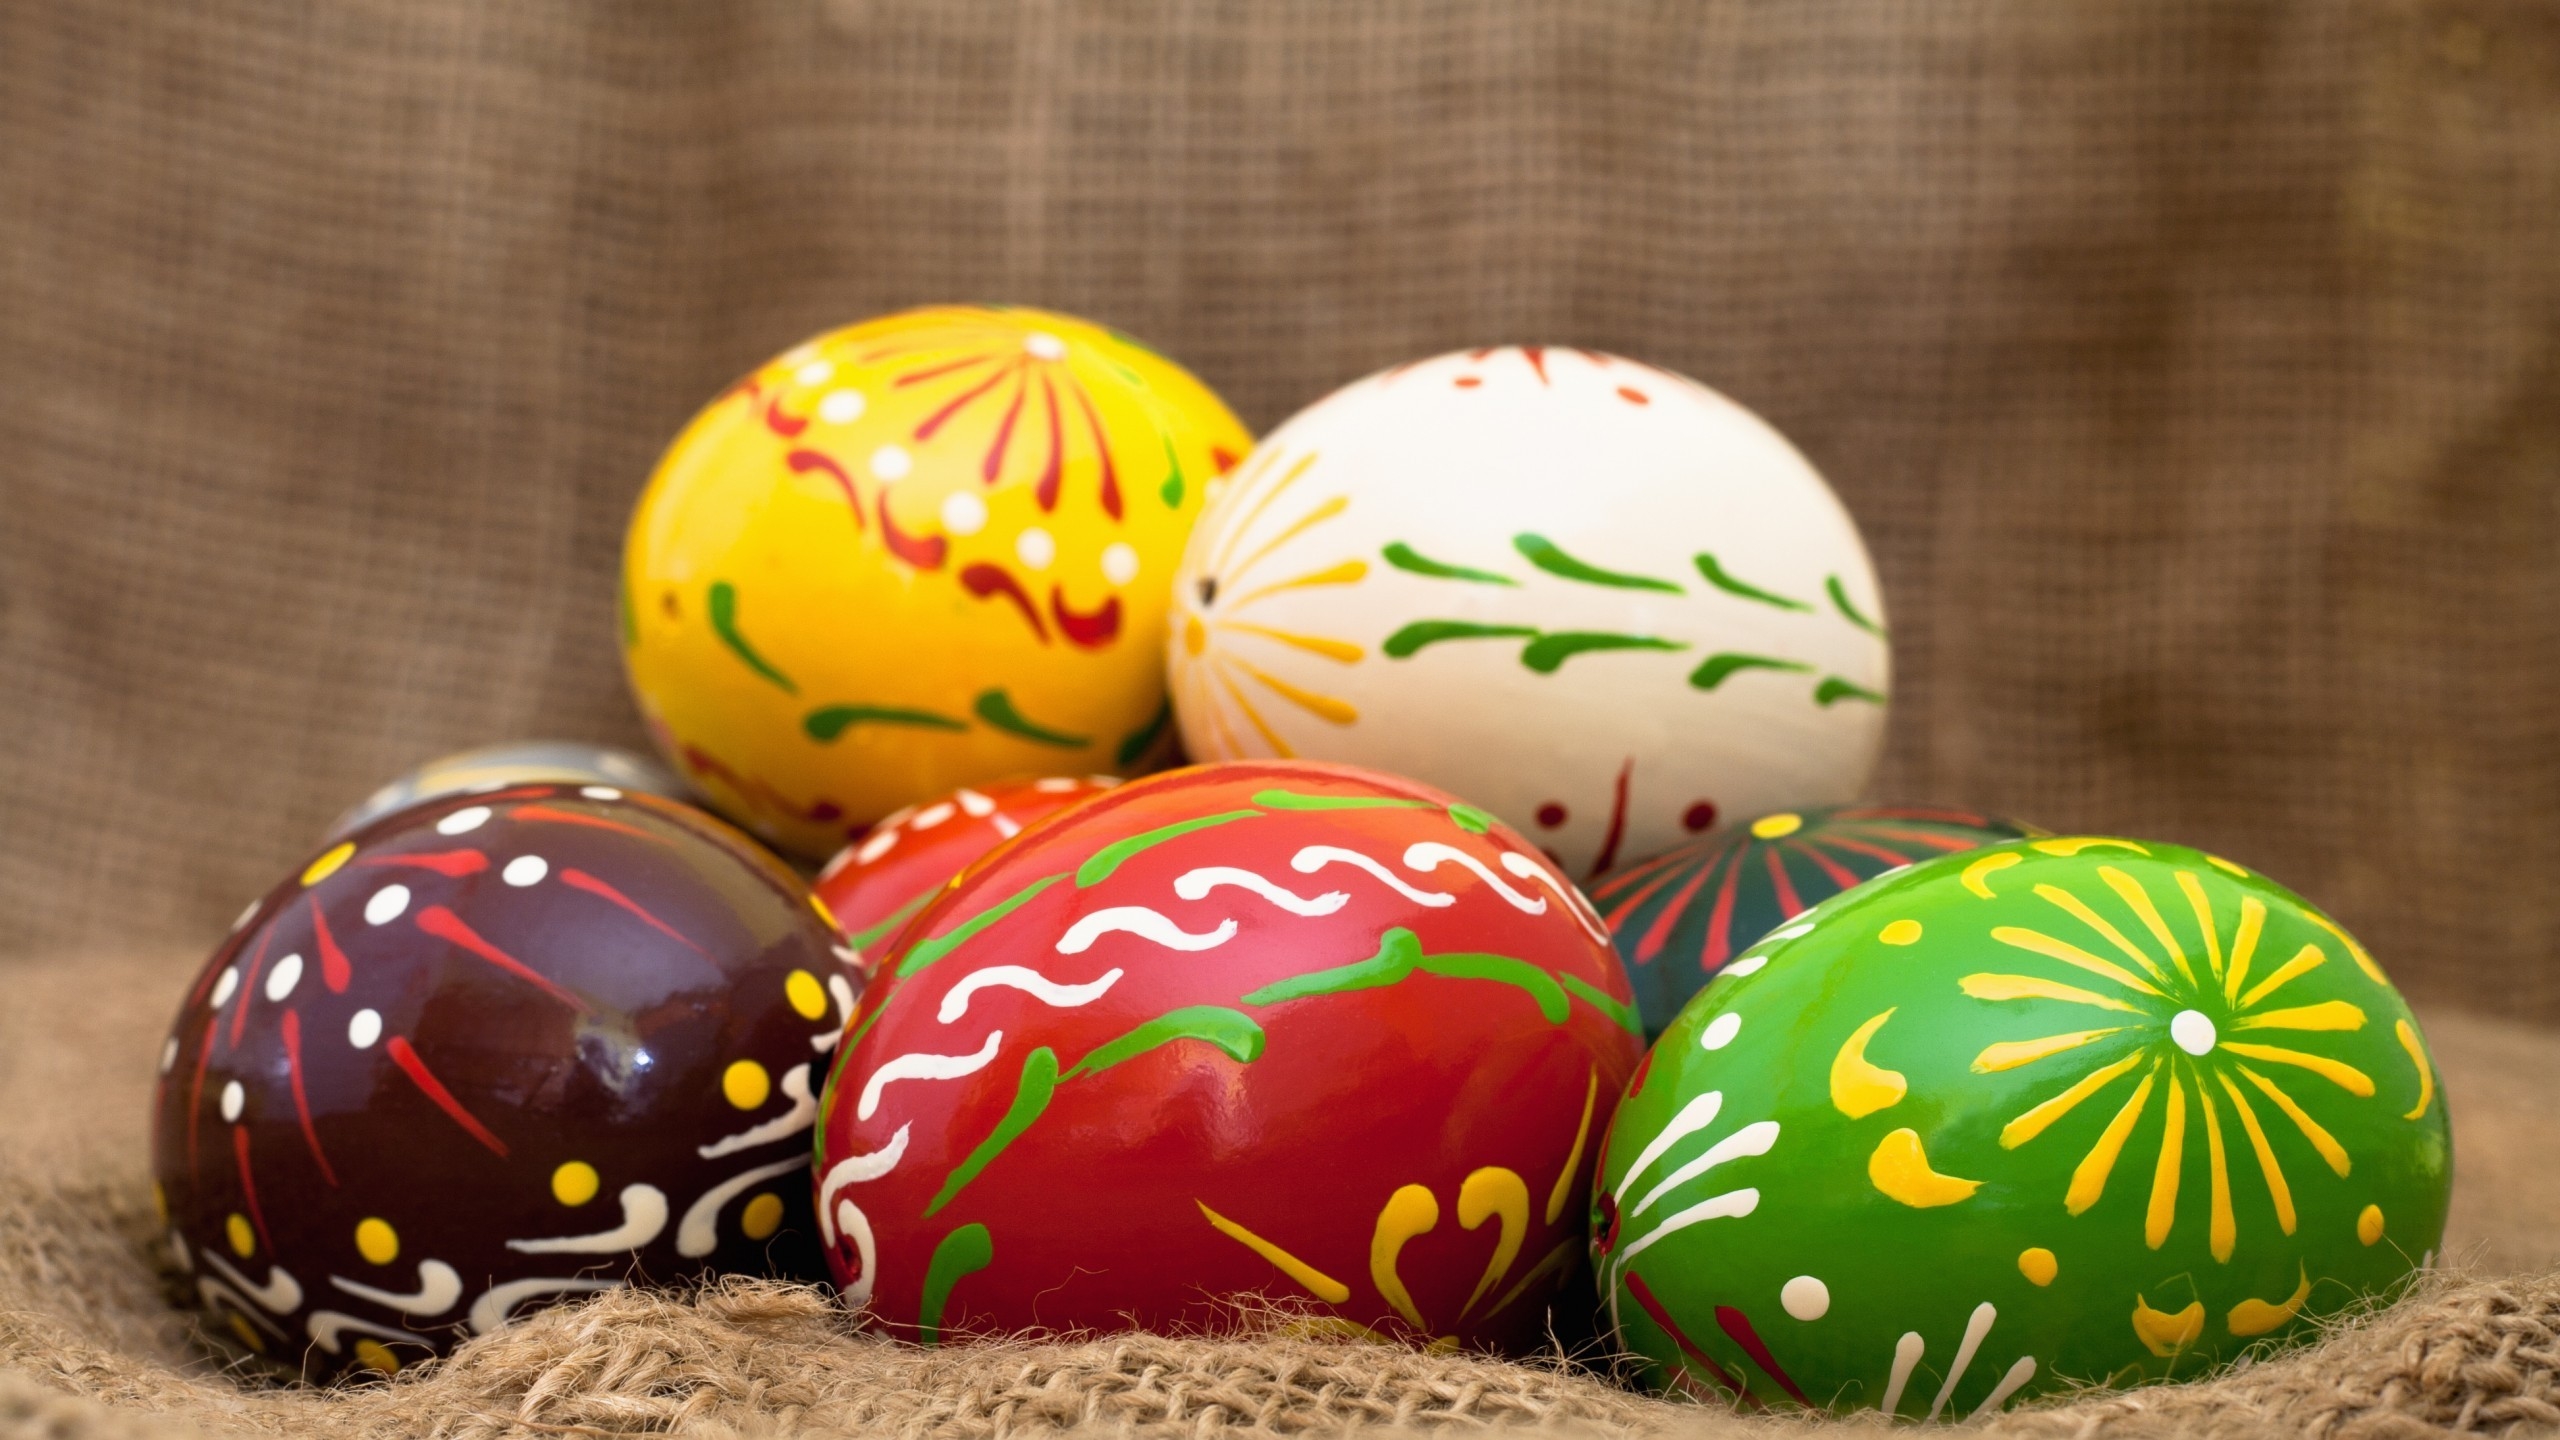 Handmade Easter Eggs for 2560x1440 HDTV resolution